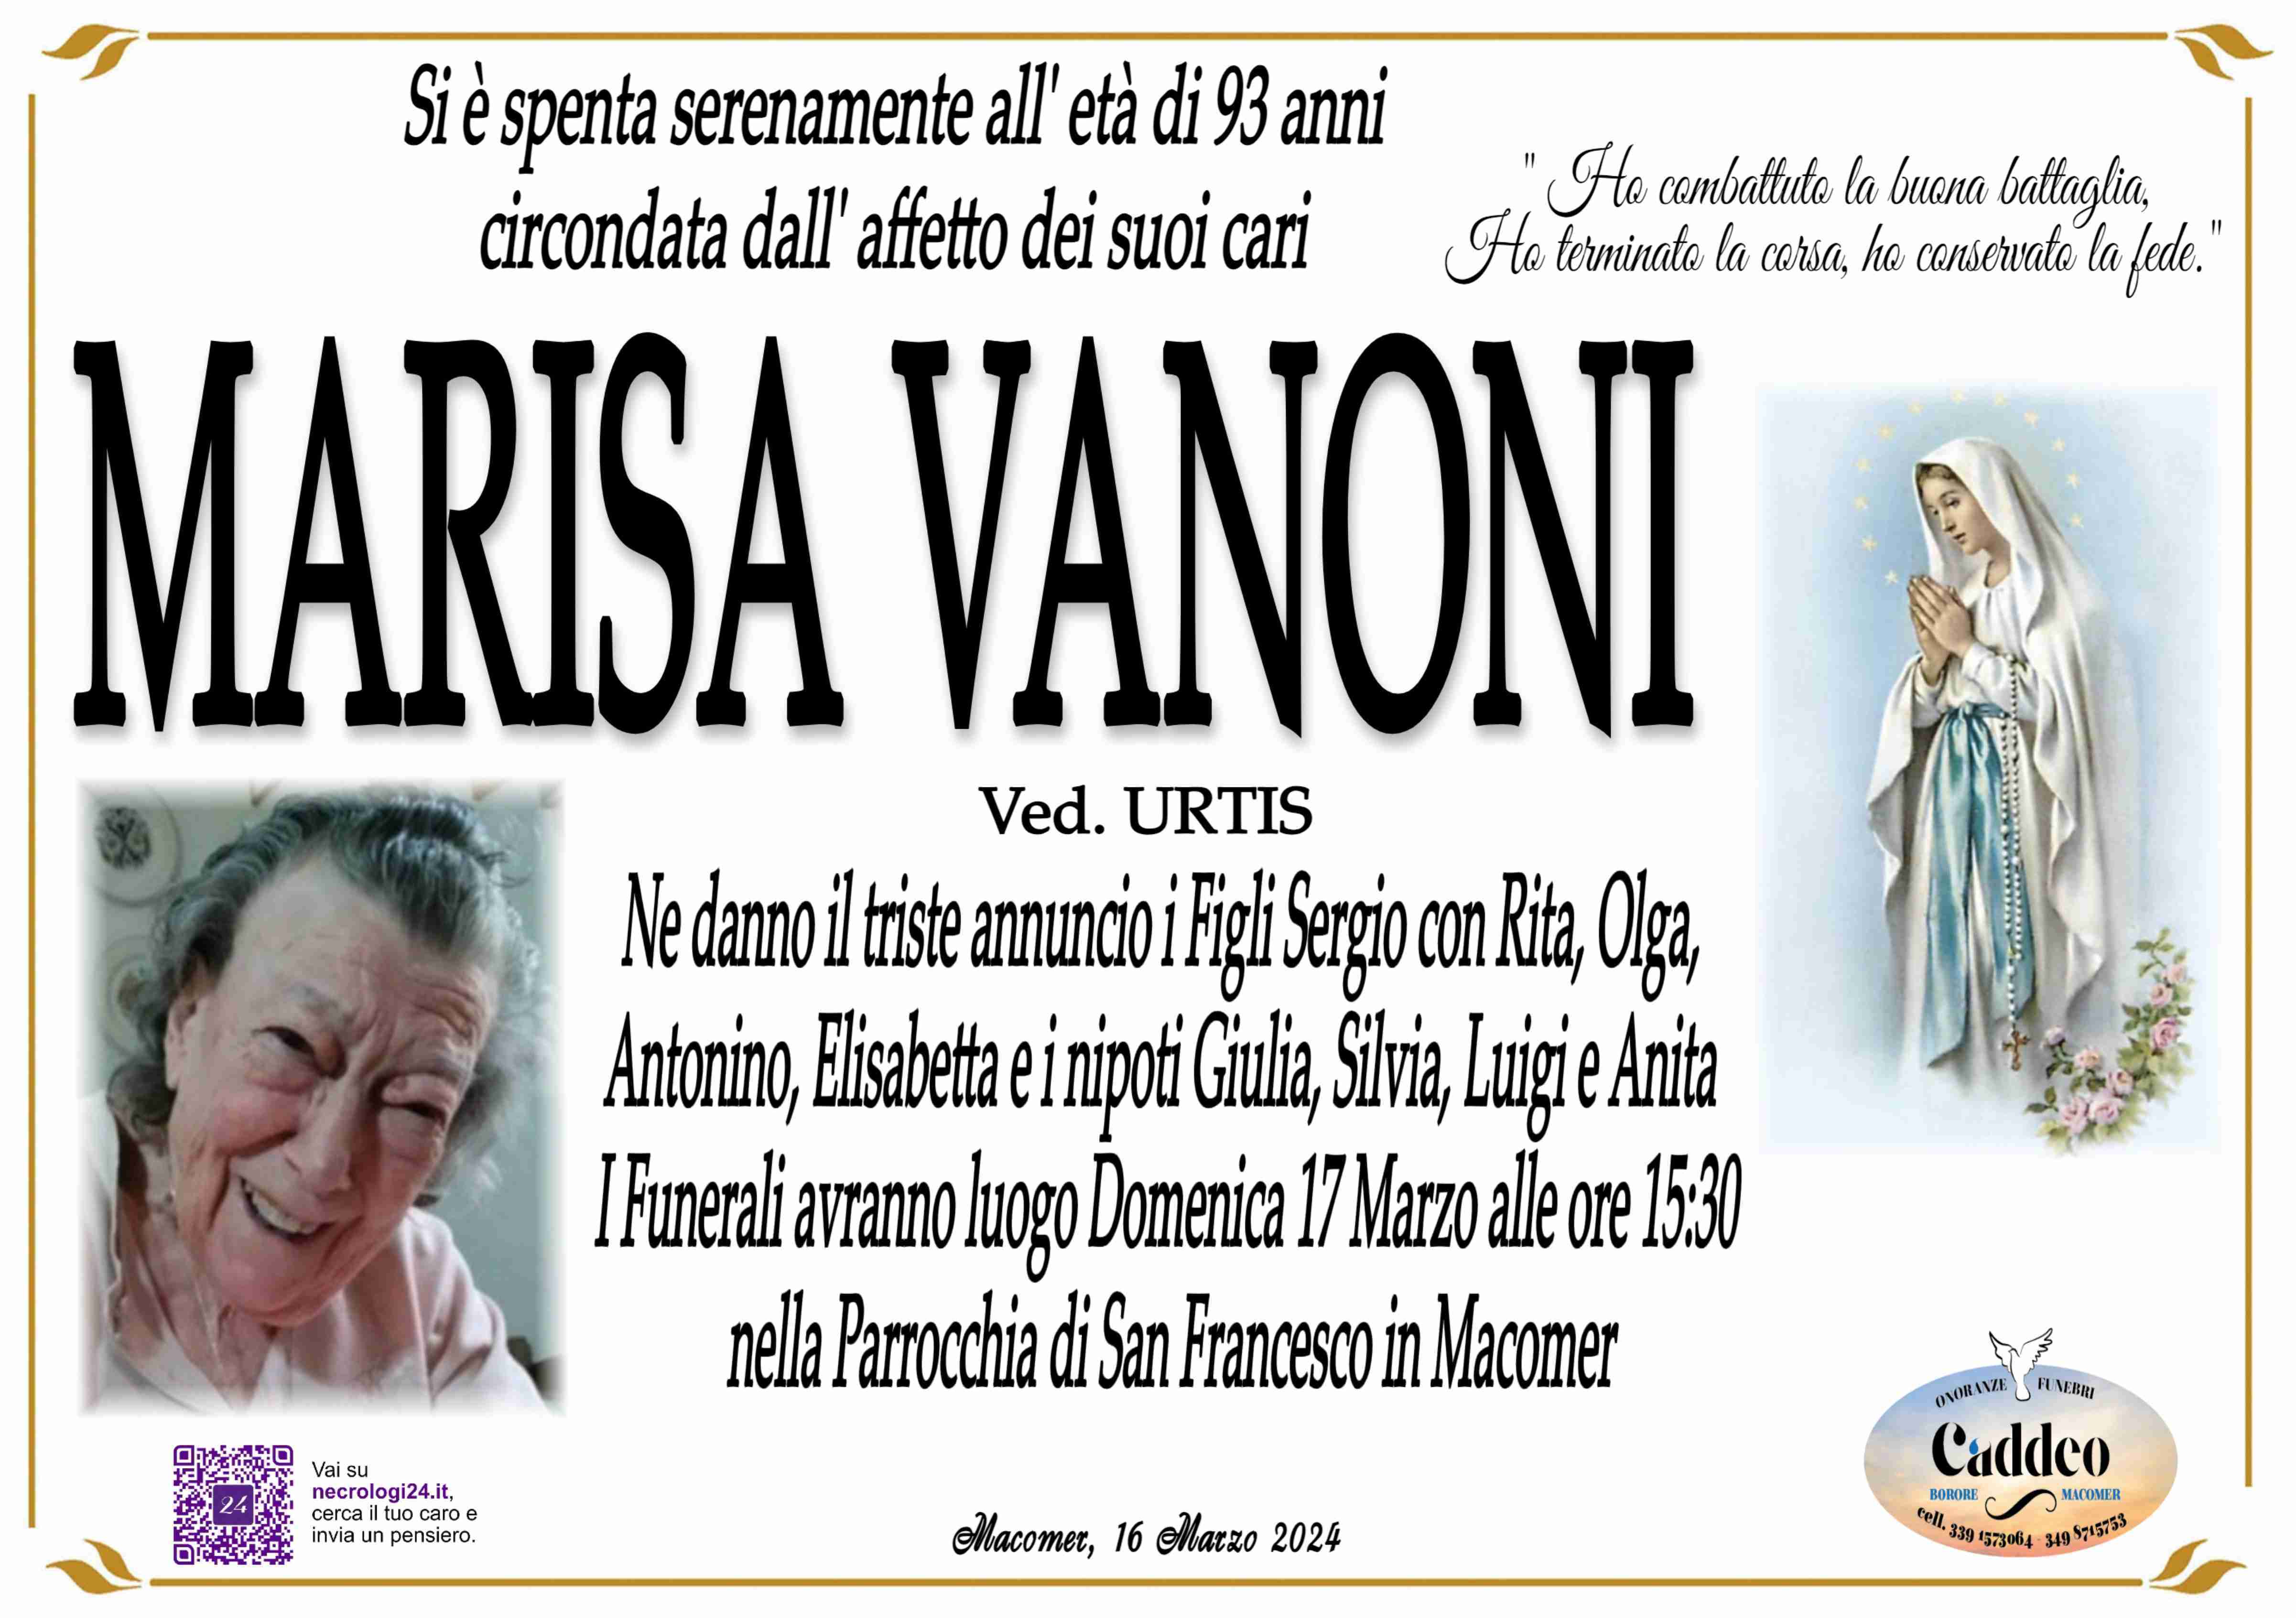 Marisa Vanoni